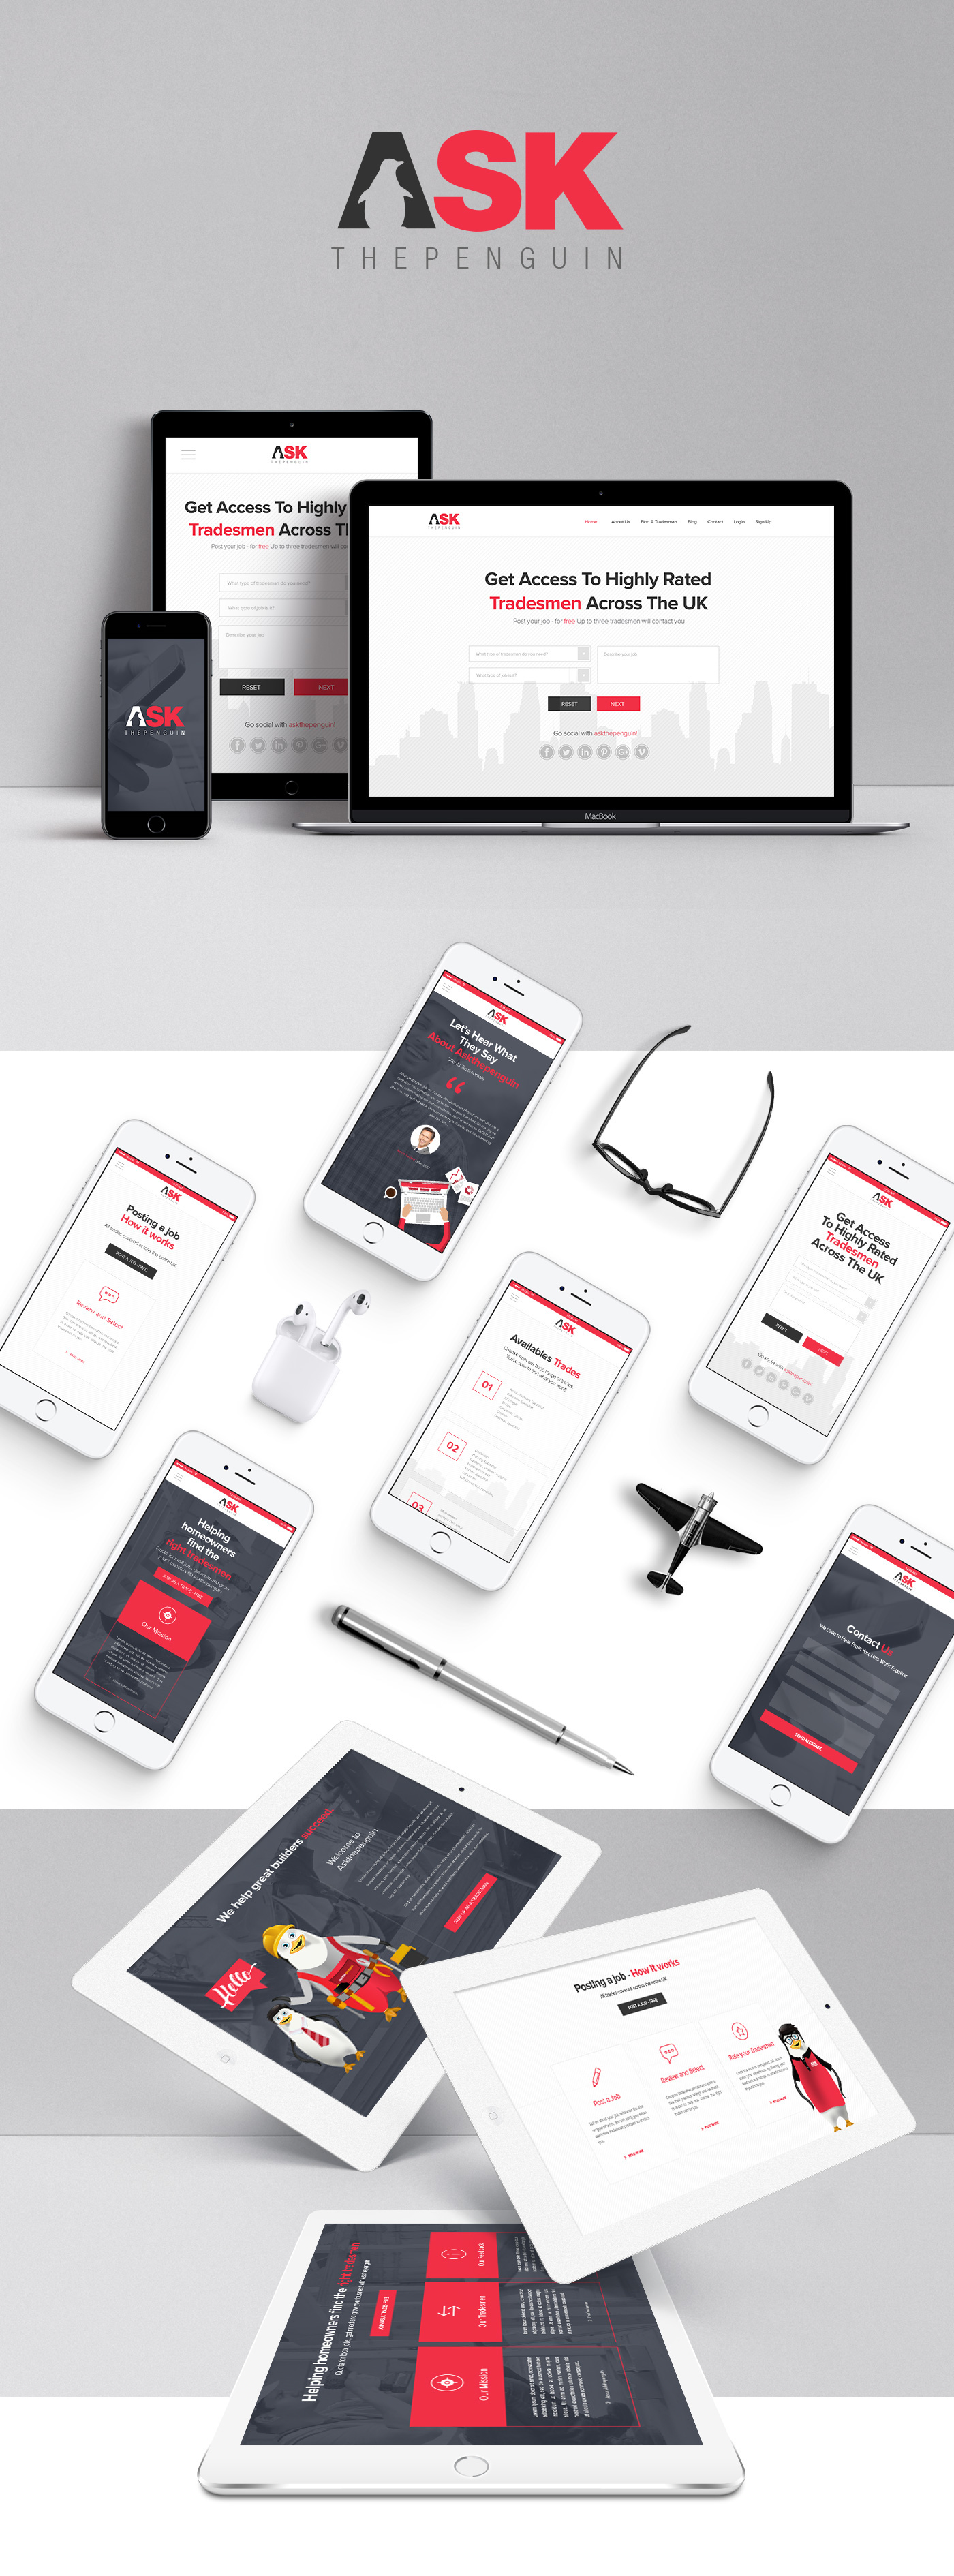 Web Design  Web designer Graphic Designer UI/UX Designer  mobile design apps design mobile mockups